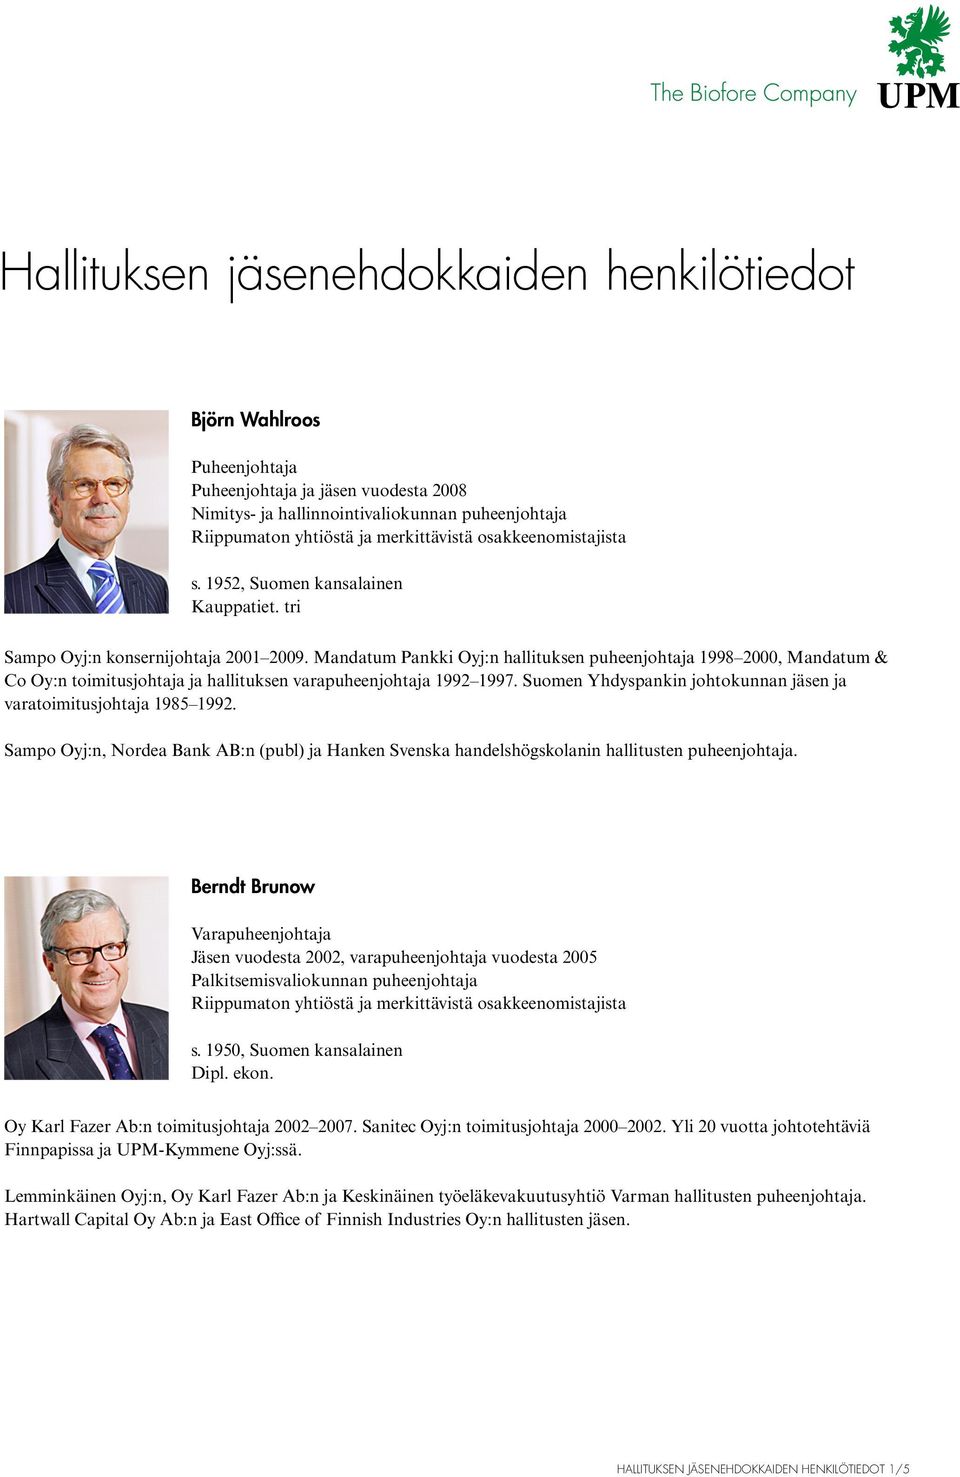 Suomen Yhdyspankin johtokunnan jäsen ja varatoimitusjohtaja 1985 1992. Sampo Oyj:n, Nordea Bank AB:n (publ) ja Hanken Svenska handelshögskolanin hallitusten puheenjohtaja.